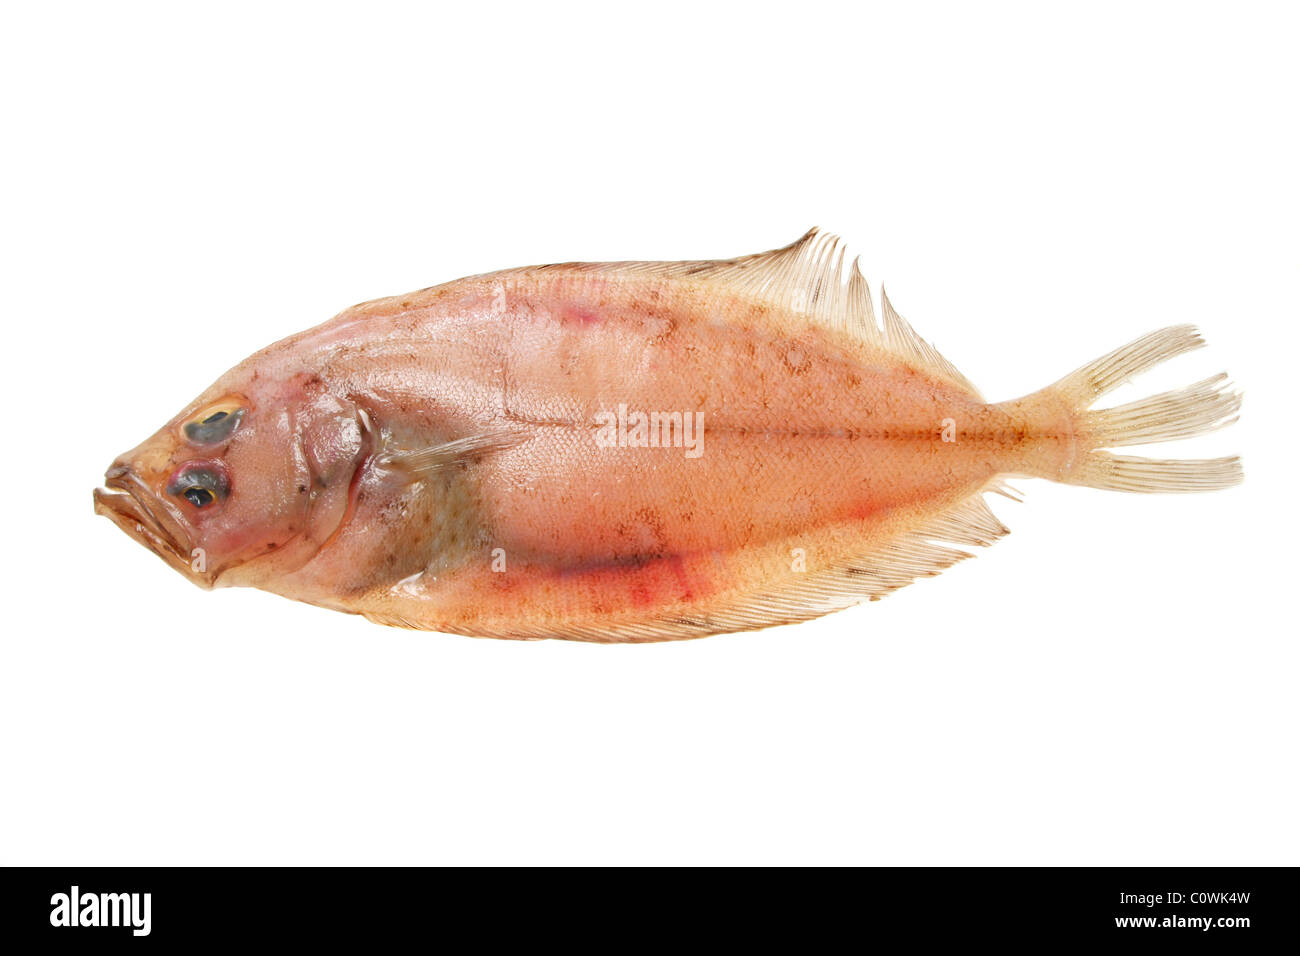 Megrim sole flat fish isolated on white Stock Photo